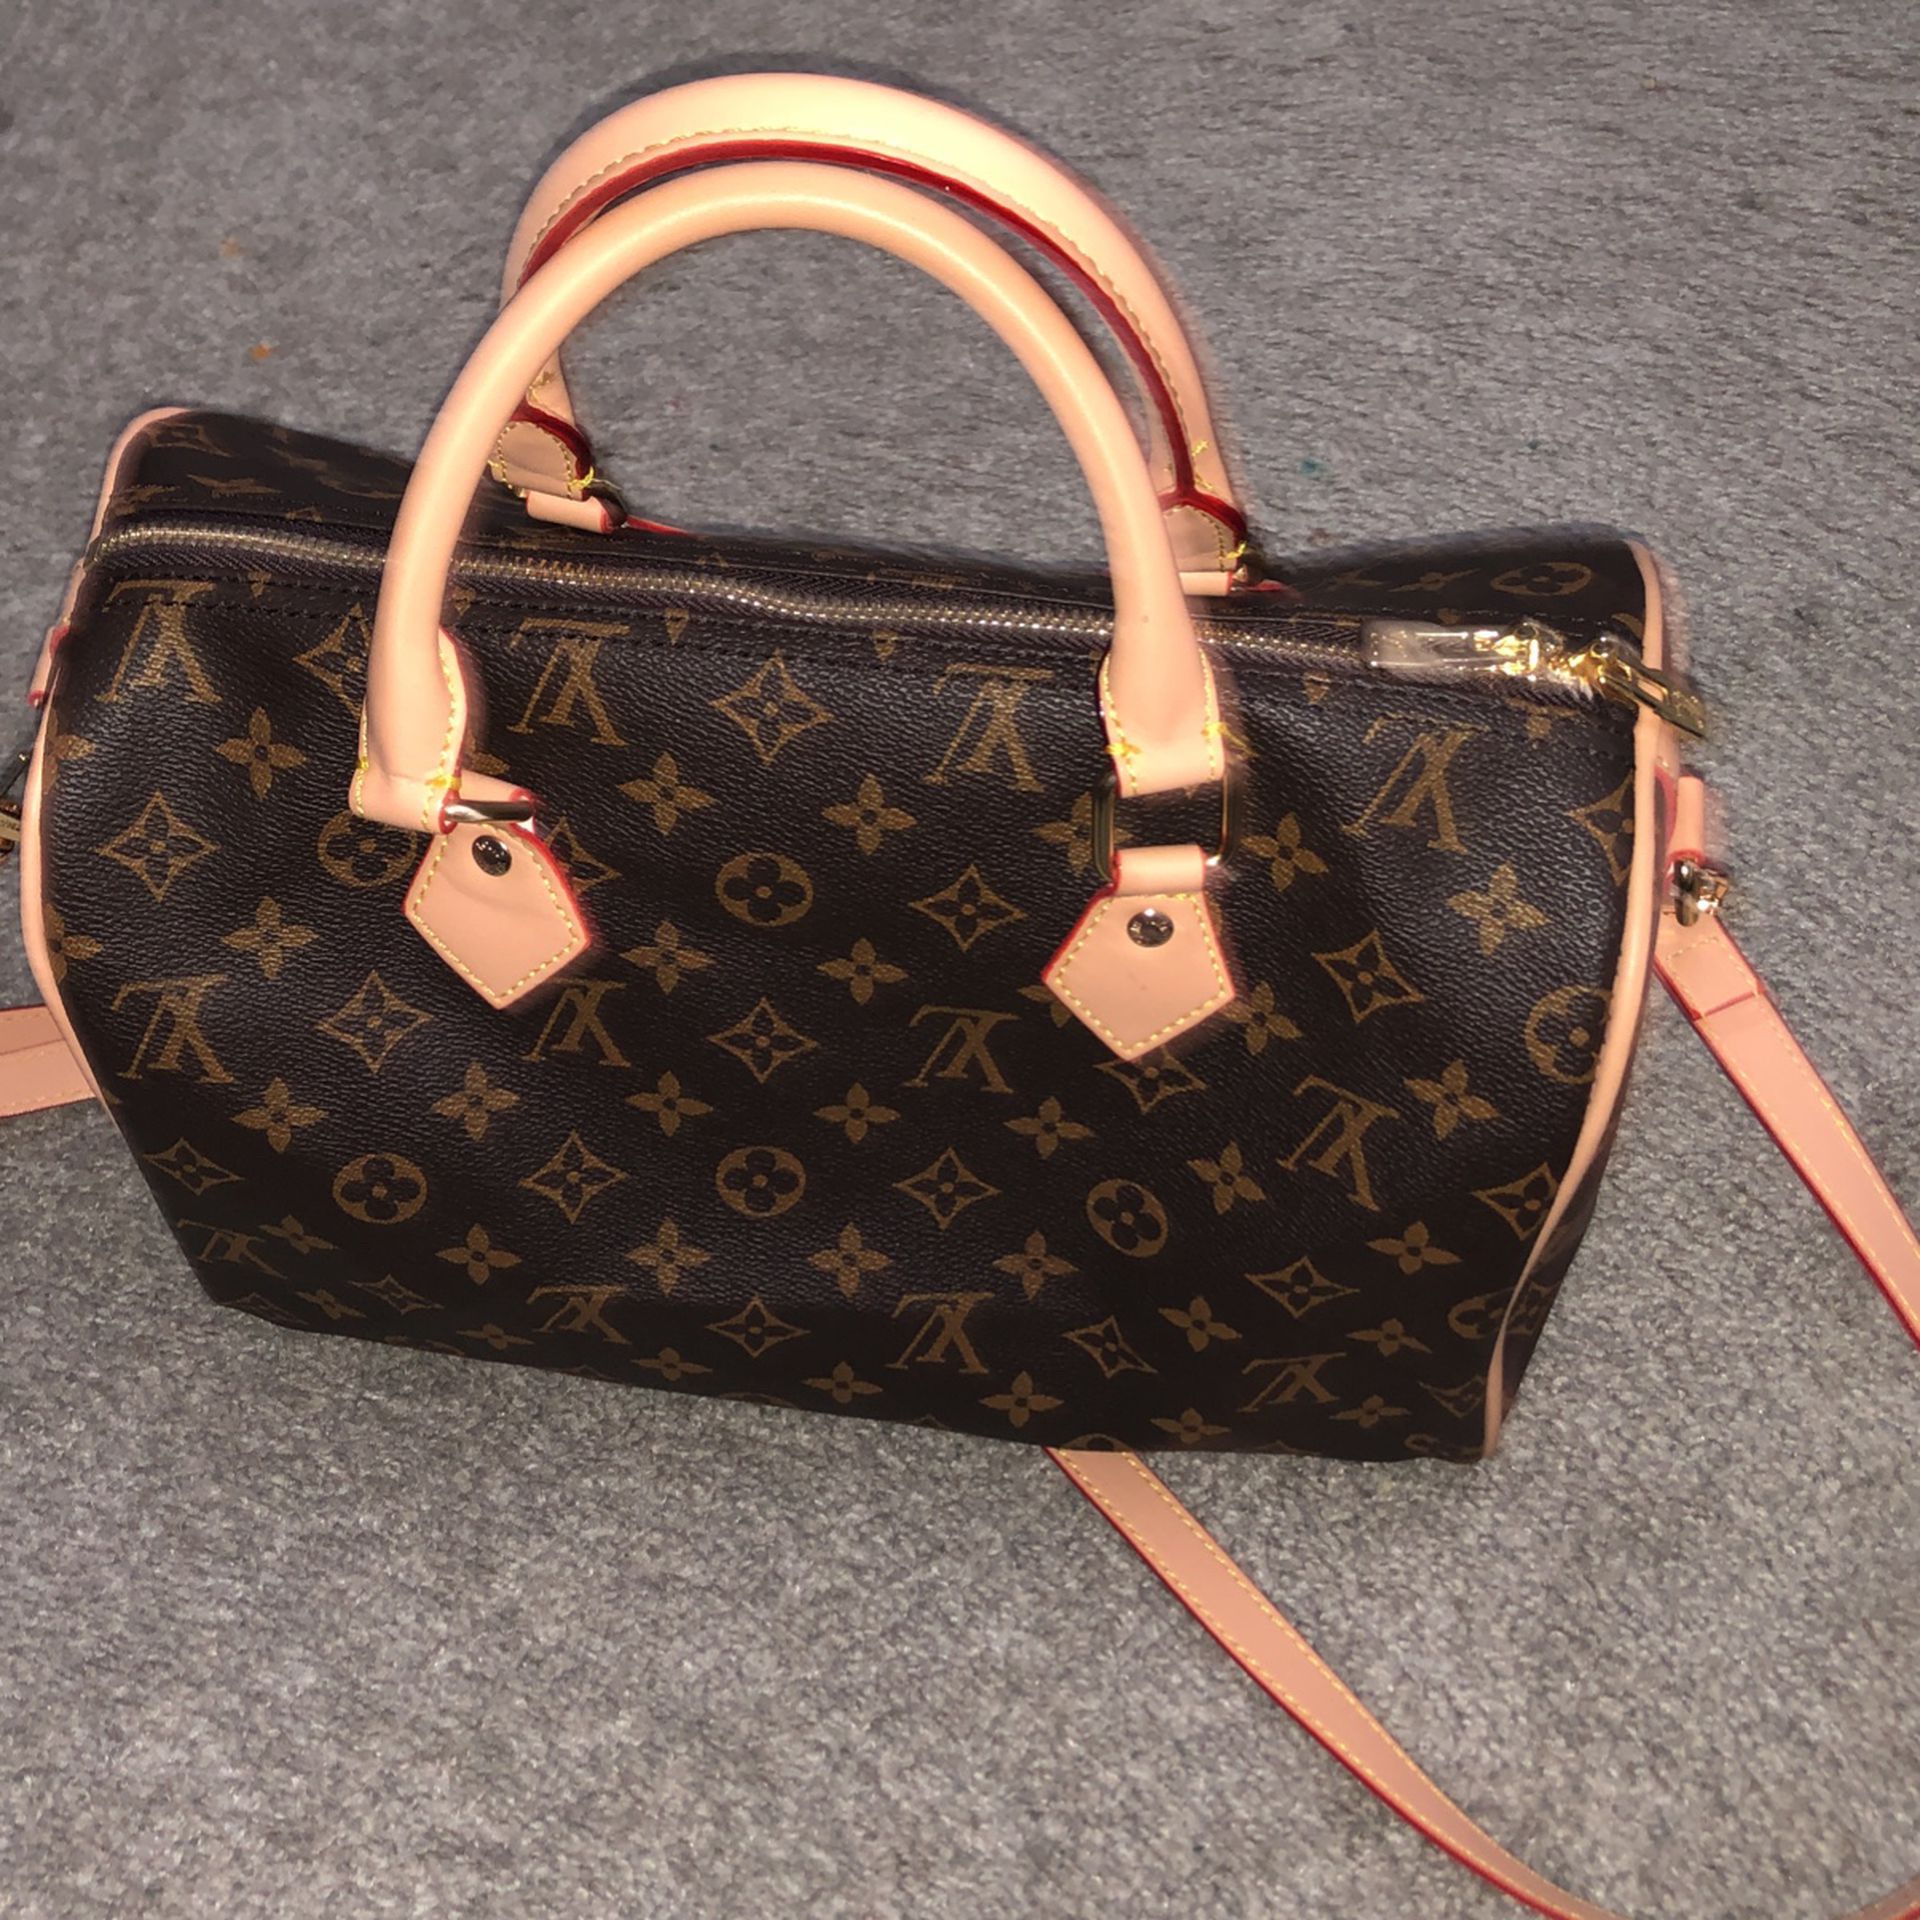 new lv handbags